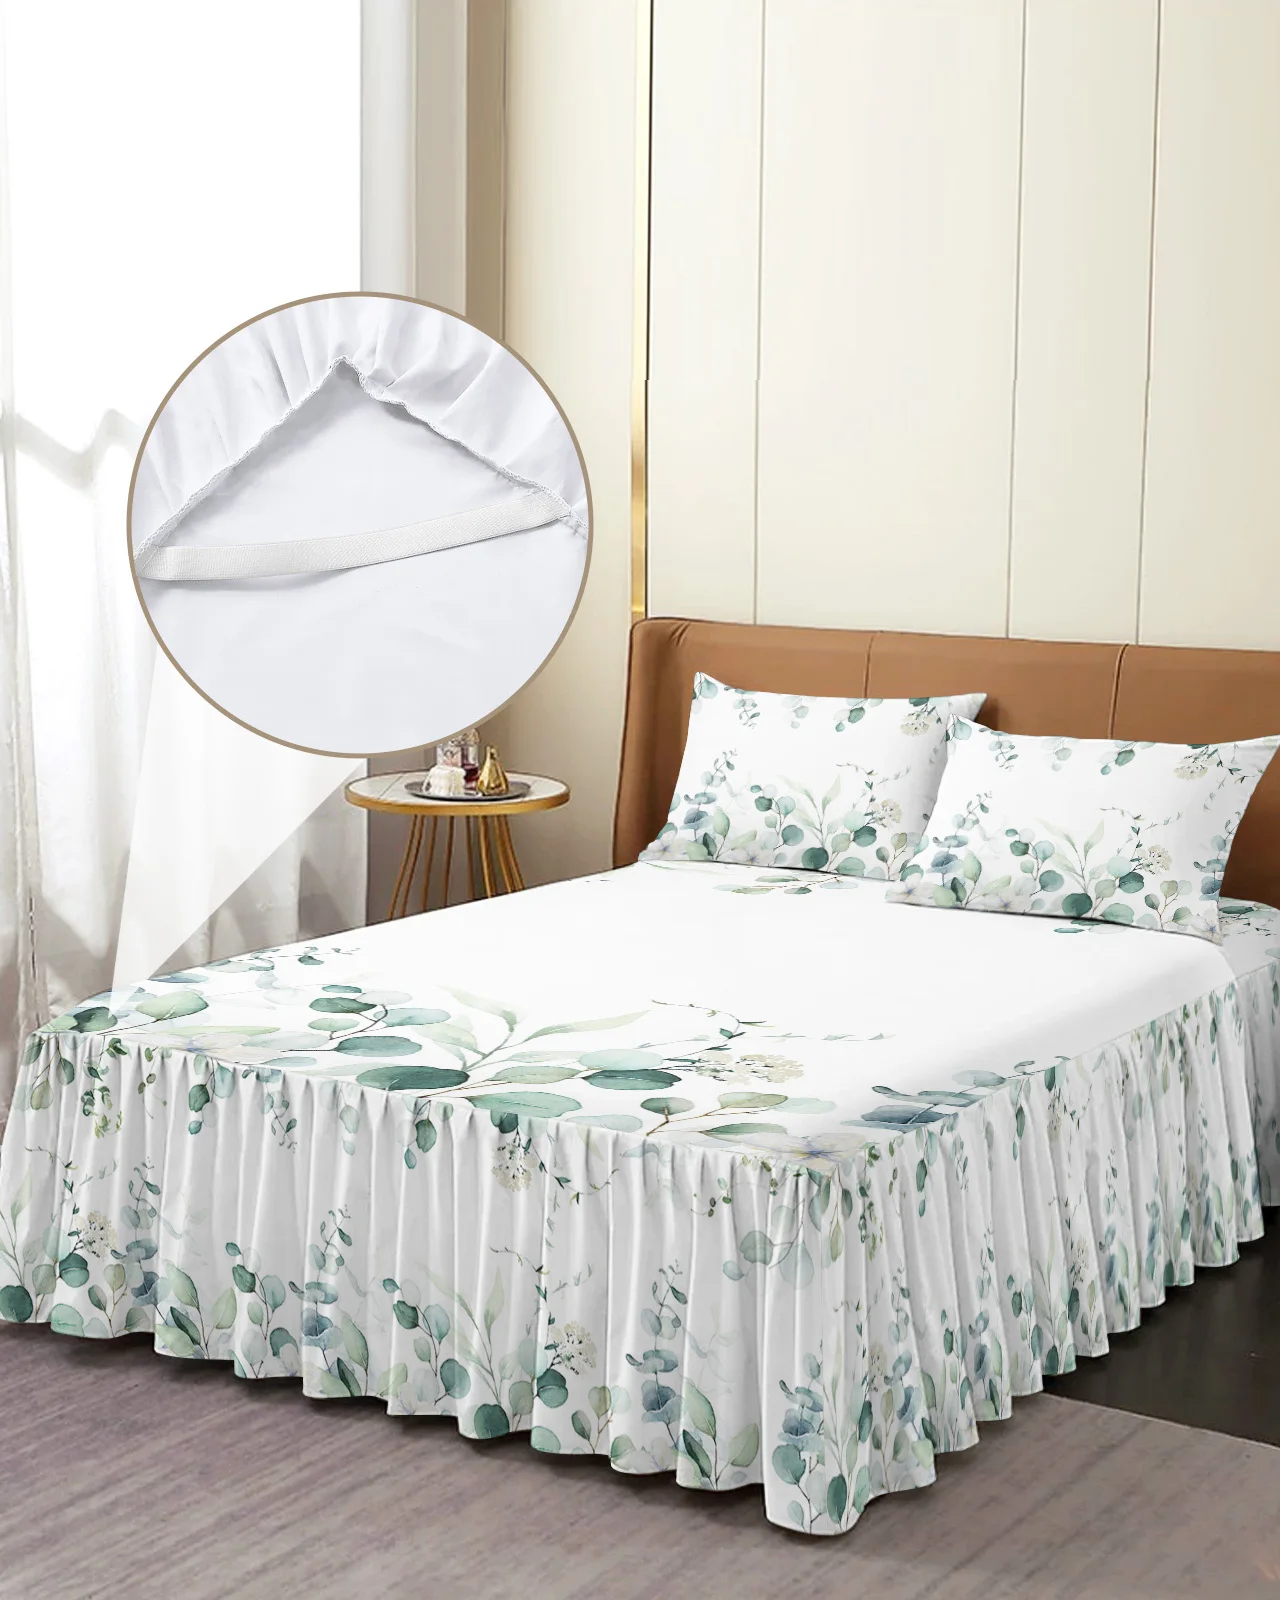 

Комплект постельного белья с принтом листьев эвкалипта, эластичное покрывало с наволочками, наматрасник, Комплект постельного белья